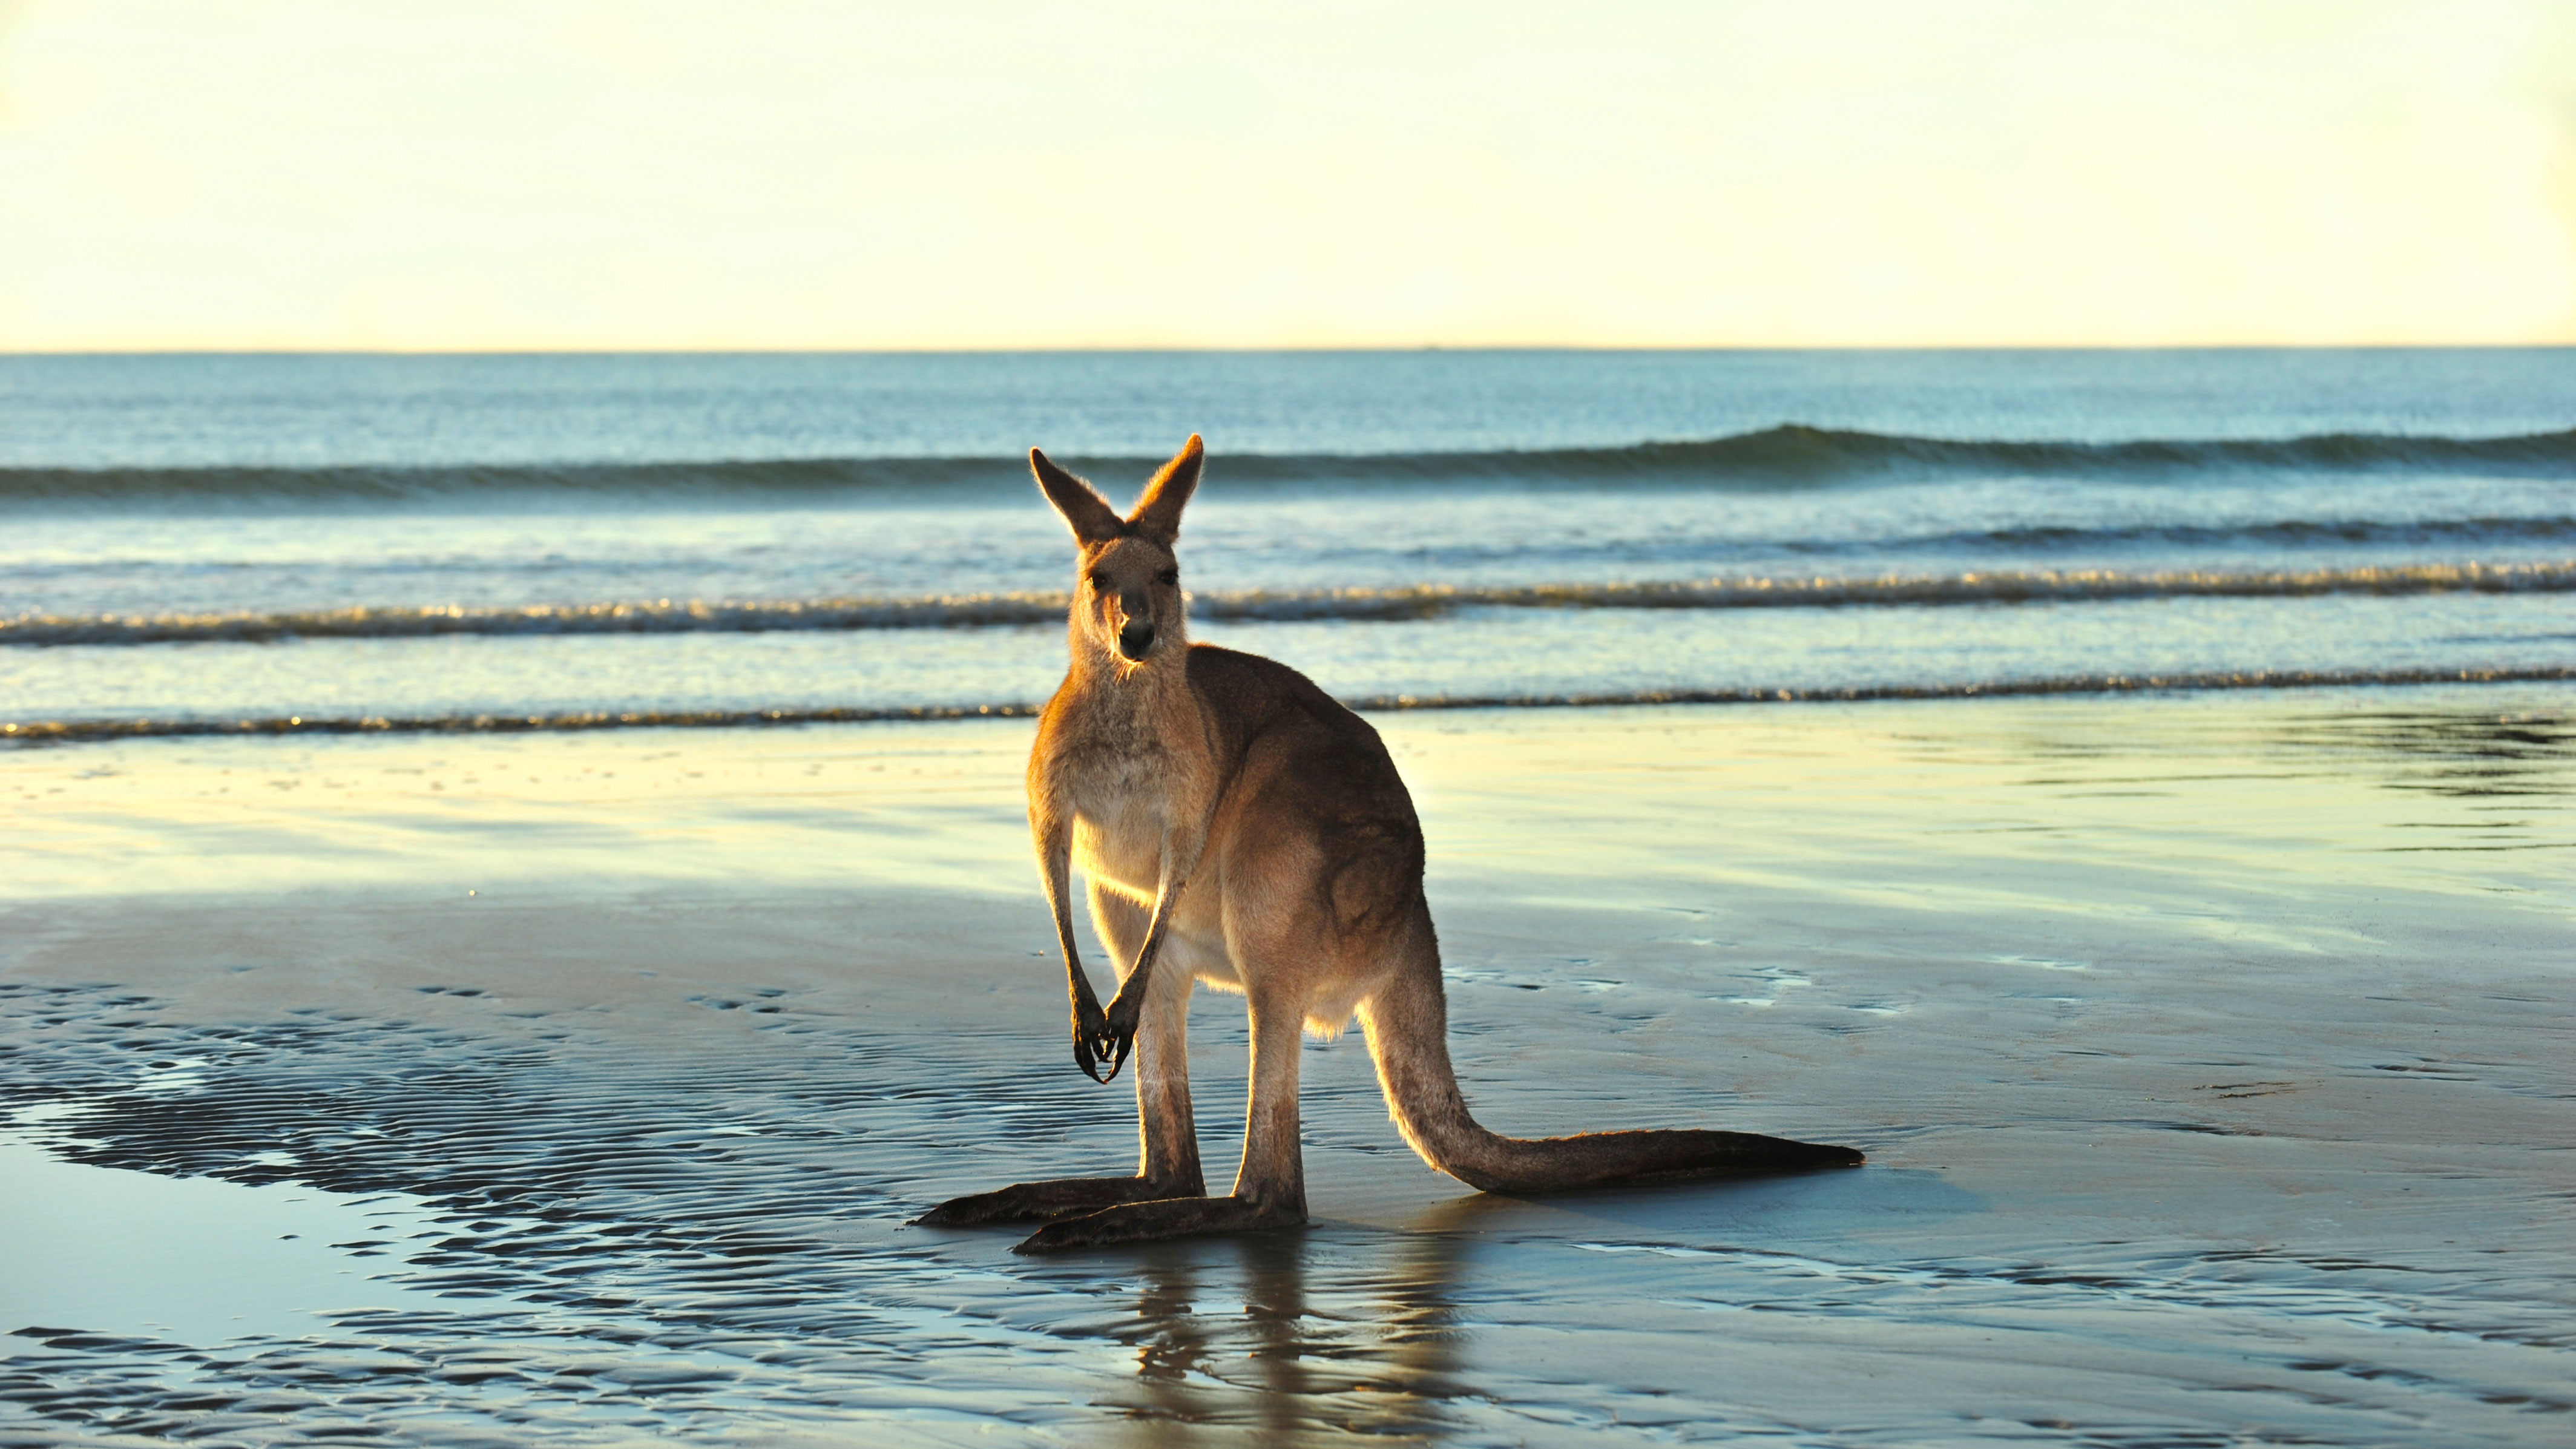 Kangaroo on beach 